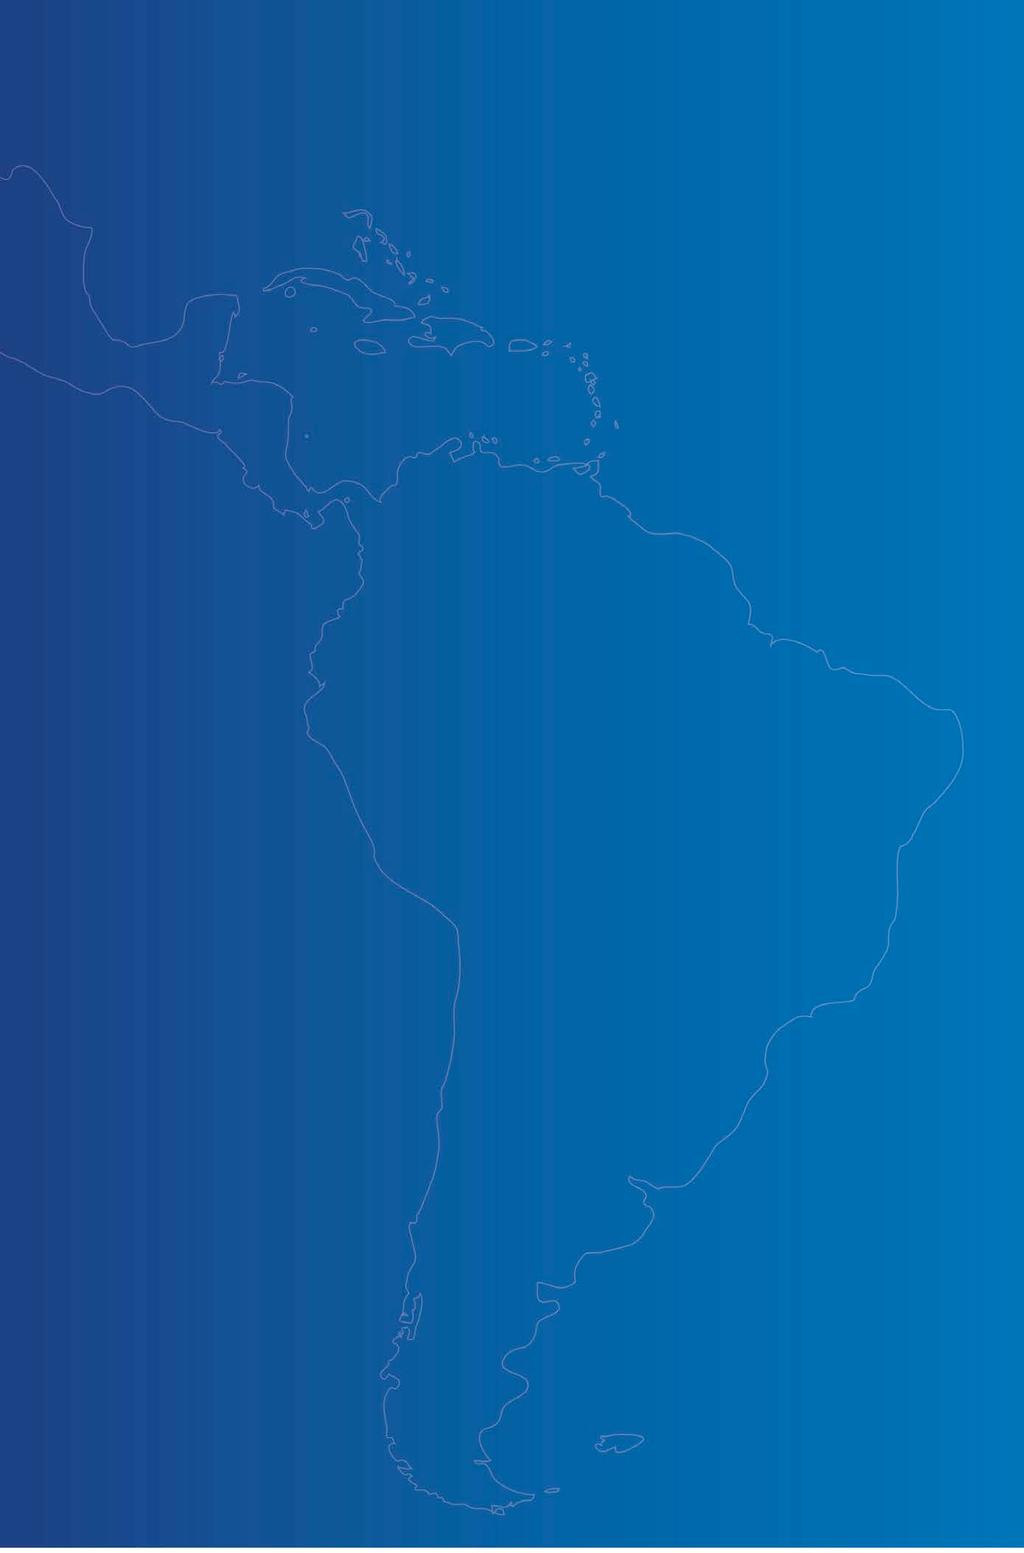 Primer trimestre 2015 Crecimiento de EBTIDA ajustado de 3,3% impulsado por un mejor desempeño en Chile, Perú y Brasil. Colombia reconoce en 1T15 un nuevo pago de impuesto sobre el patrimonio de CLP 6.